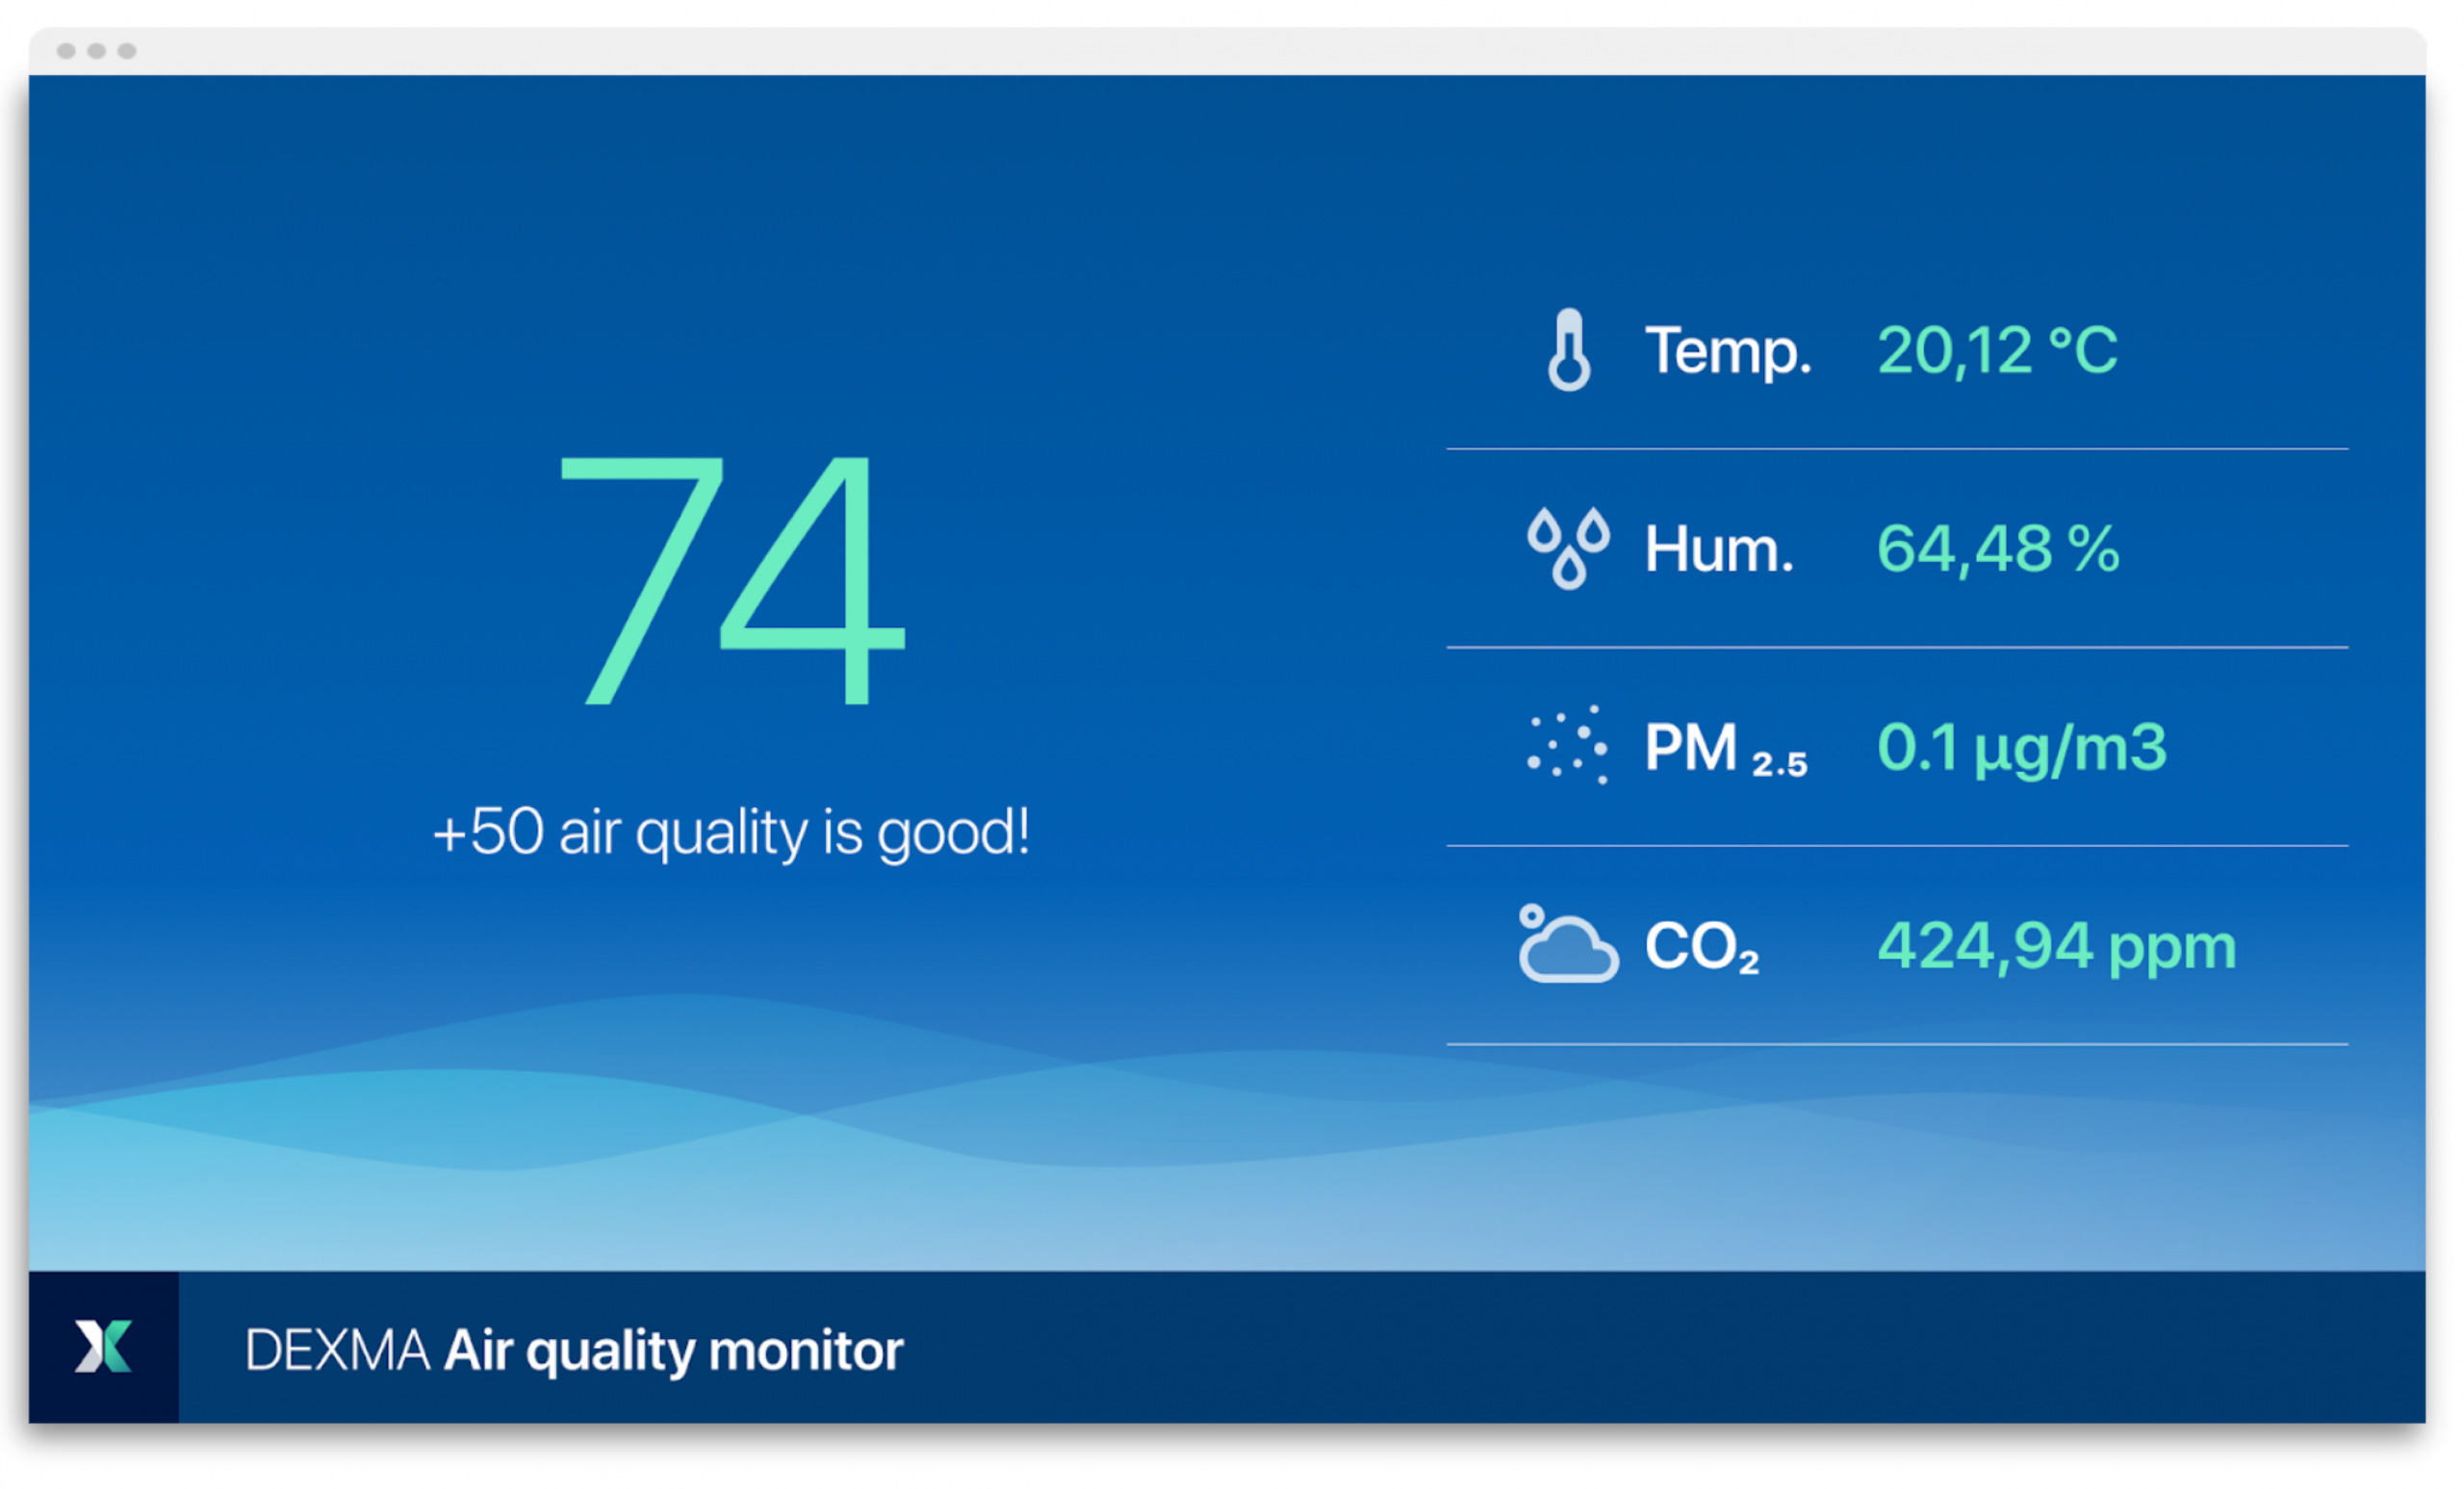 Dashboard Monitorización Calidad del Aire Interior DEXMA